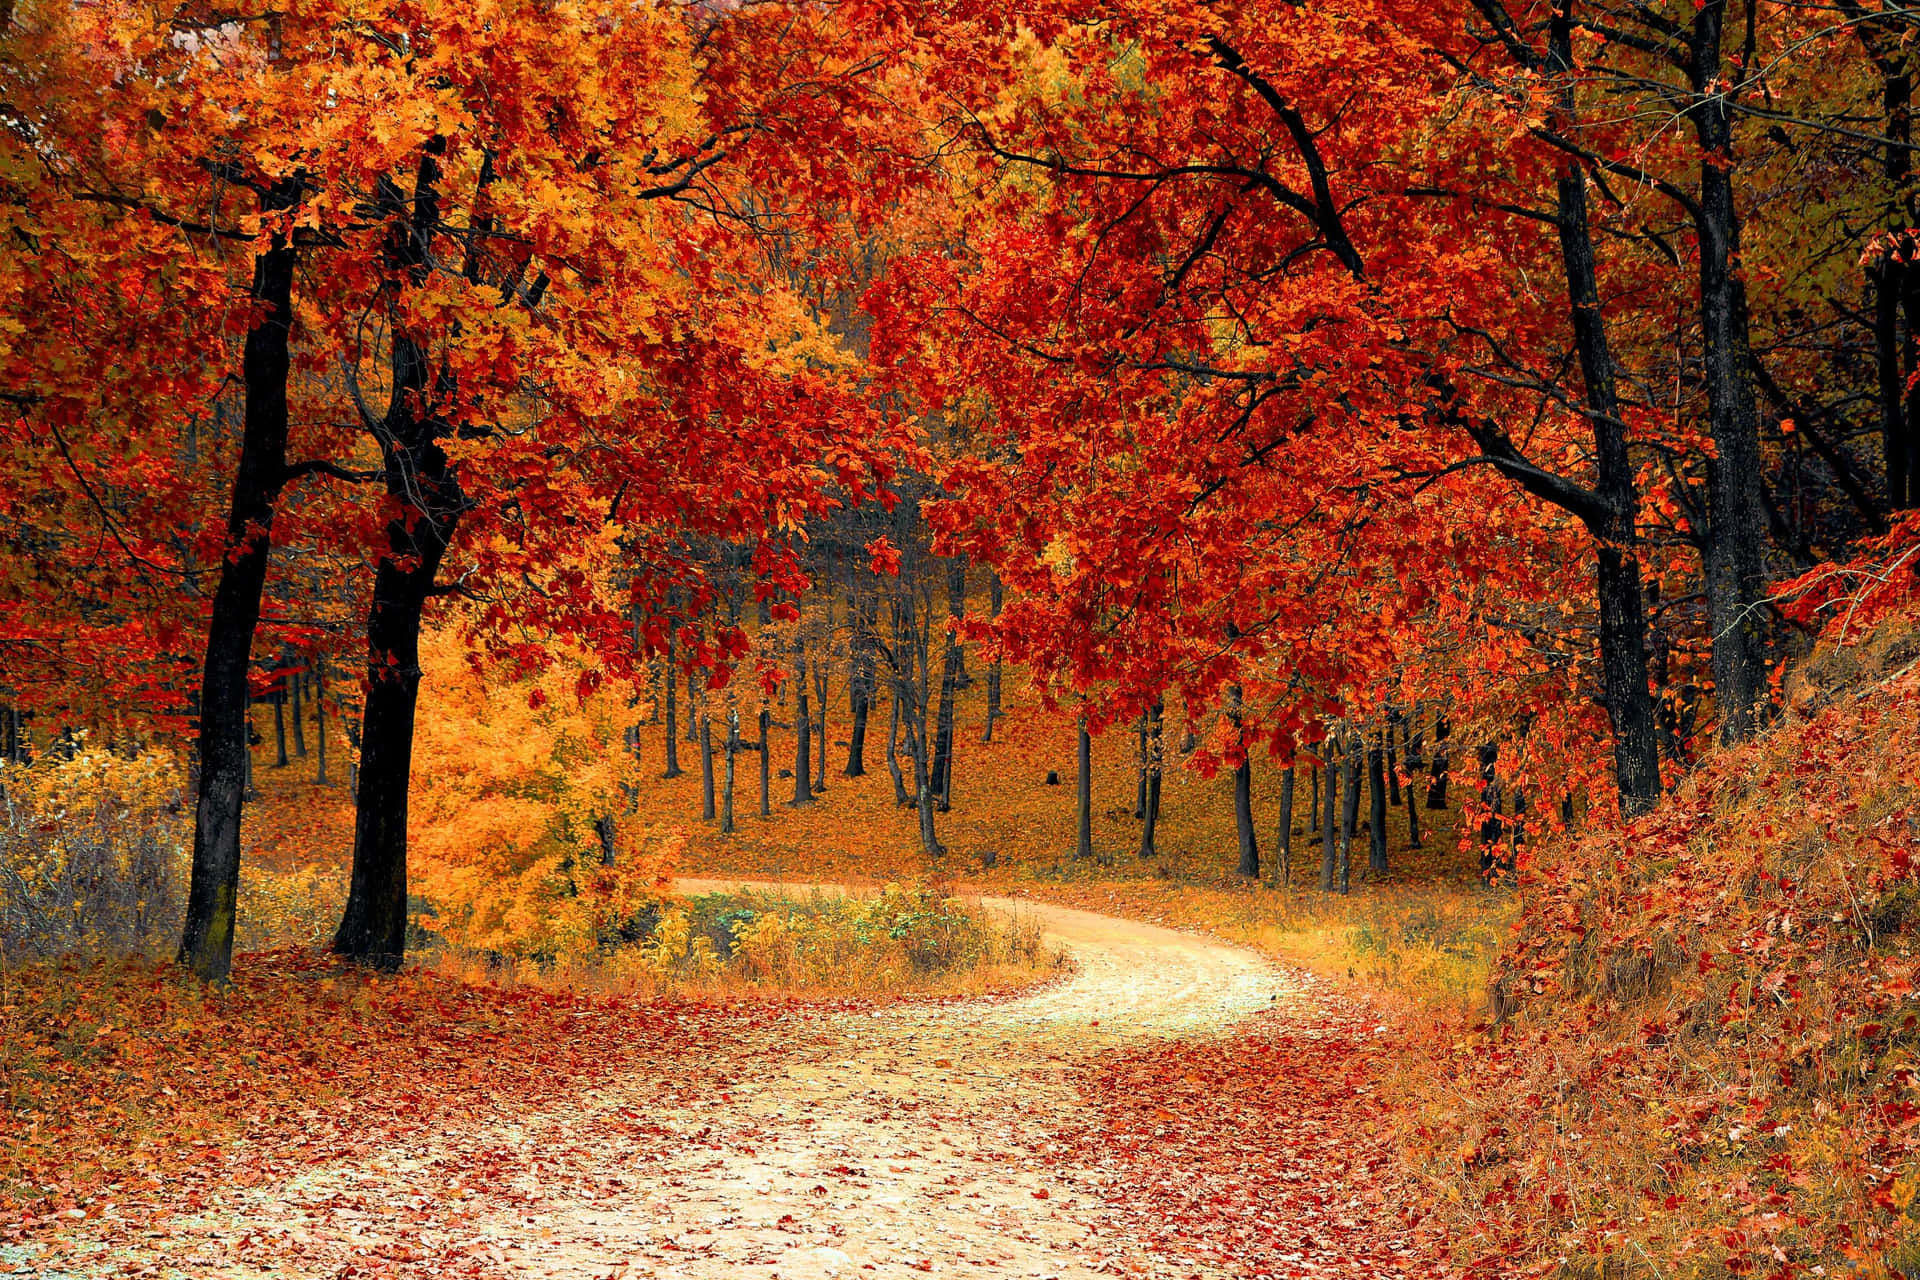 An enchanting trail through a lush autumn forest Wallpaper